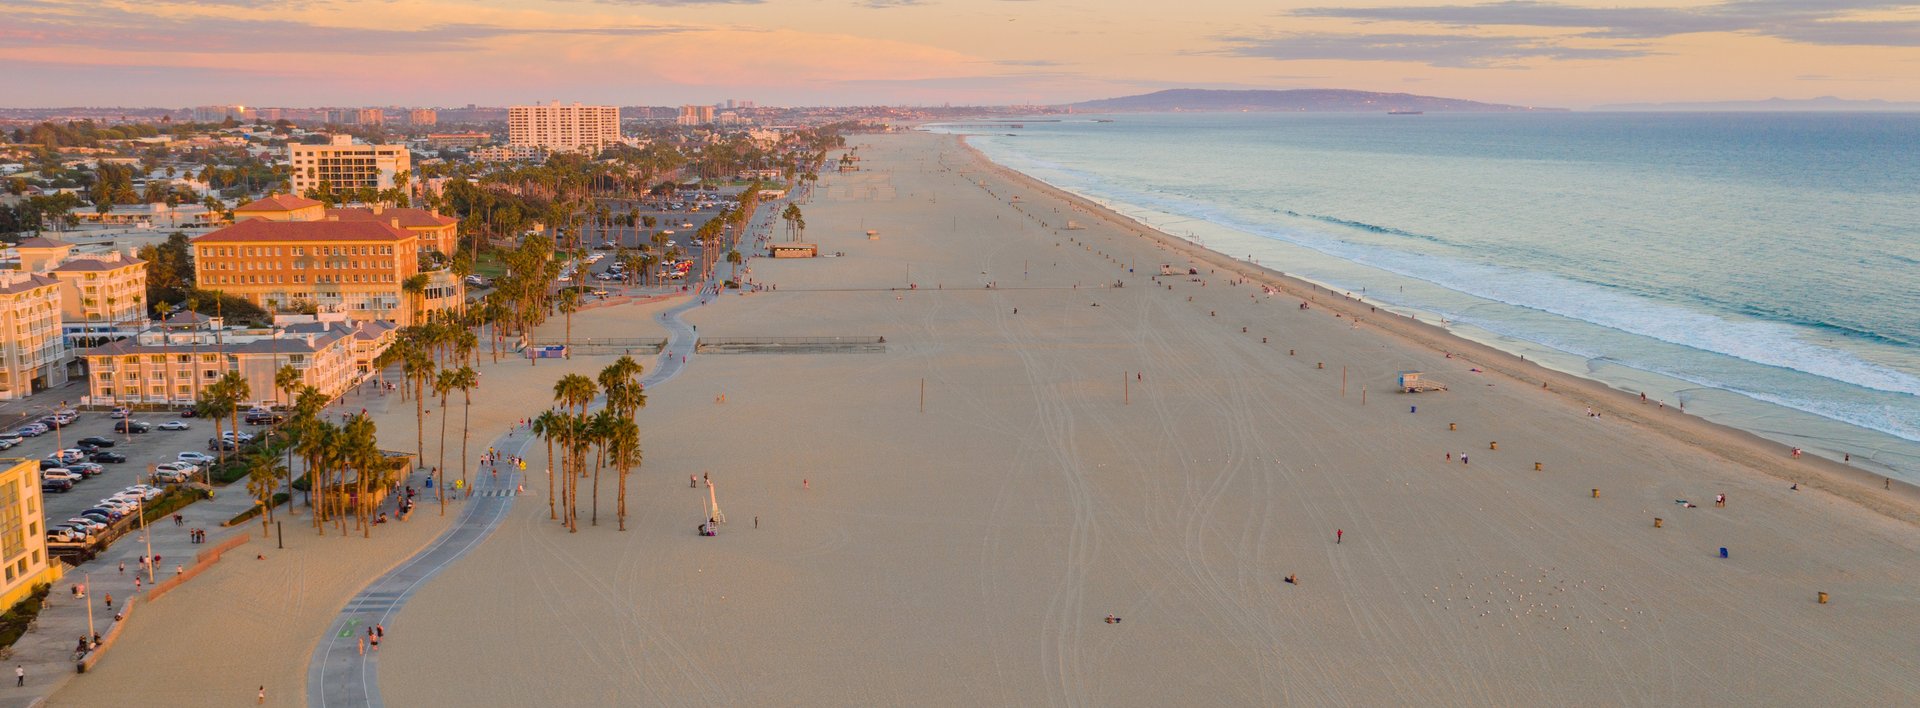 Luftaufnahme vom weitläufigen Strand Santa Monicas